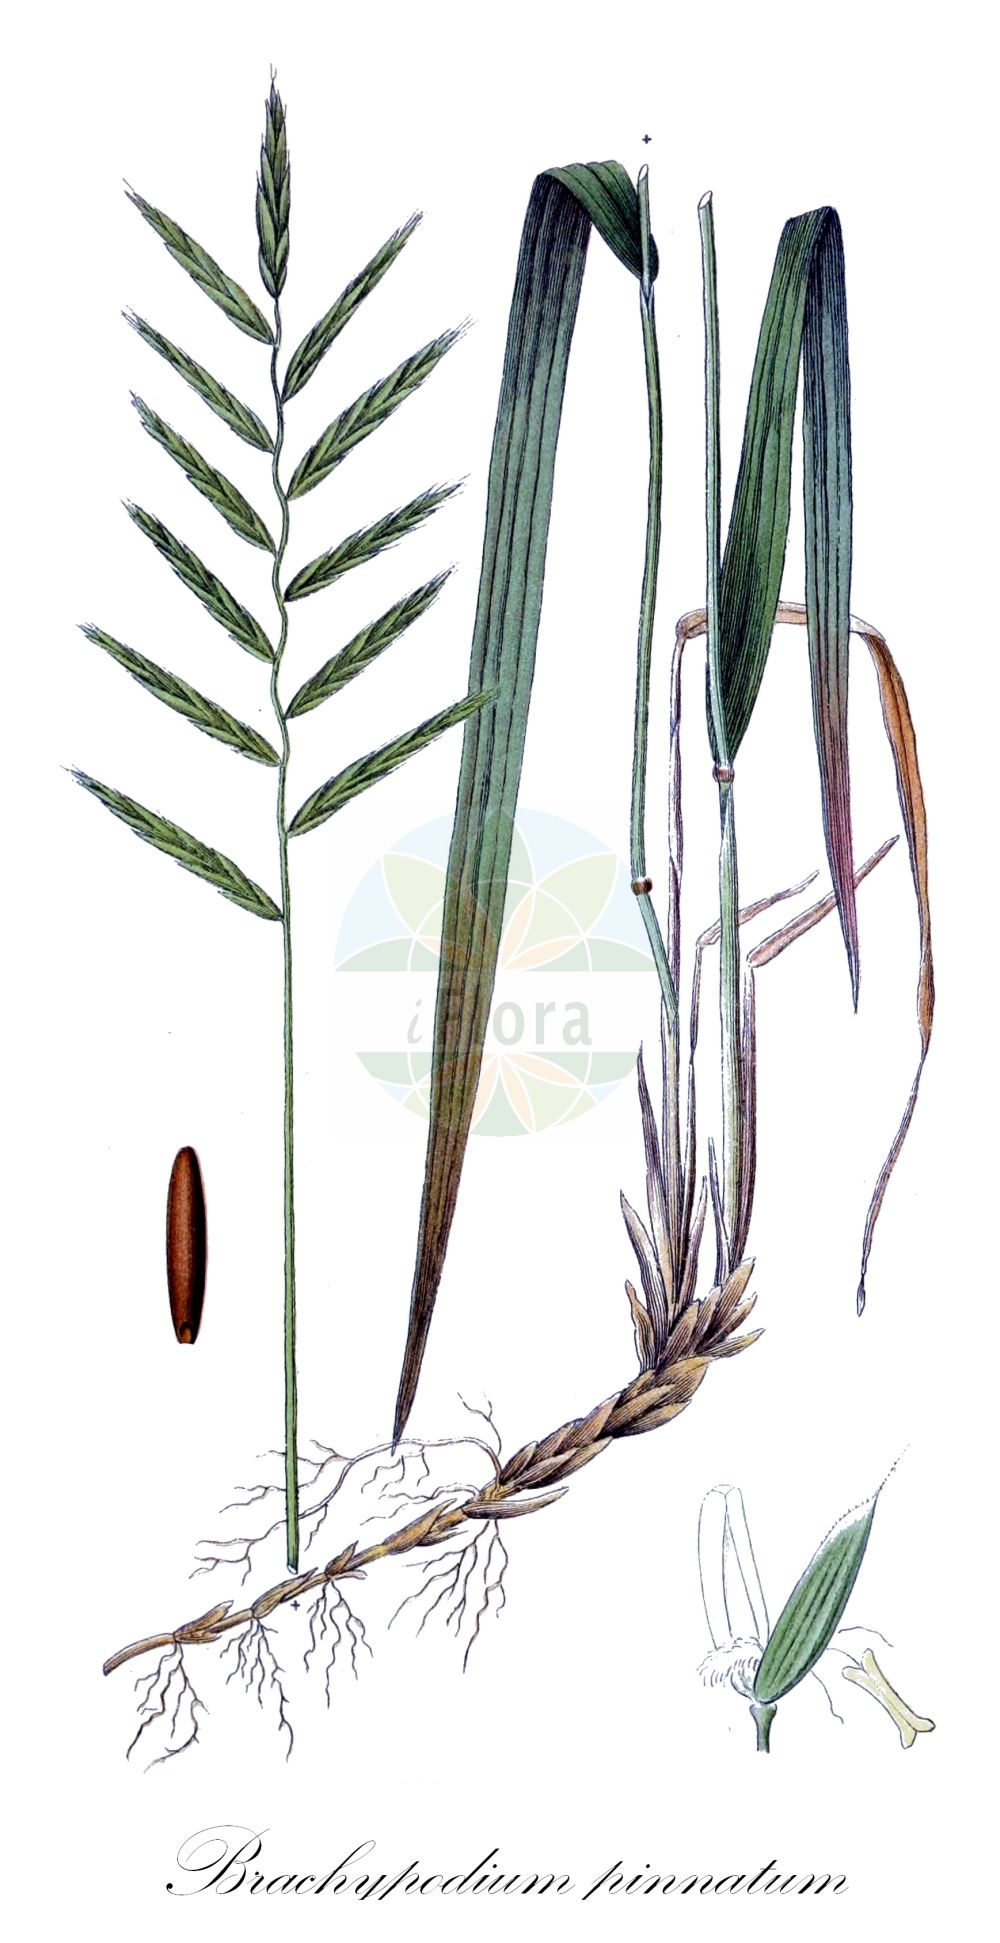 Historische Abbildung von Brachypodium pinnatum (Fieder-Zwenke - Tor-grass). Das Bild zeigt Blatt, Bluete, Frucht und Same. ---- Historical Drawing of Brachypodium pinnatum (Fieder-Zwenke - Tor-grass). The image is showing leaf, flower, fruit and seed.(Brachypodium pinnatum,Fieder-Zwenke,Tor-grass,Brachypodium pinnatum,Bromus pinnatus,Fieder-Zwenke,Tor-grass,Heath False-brome,Chalk False Brome,False Japanese Bromegrass,Brachypodium,Zwenke,False Brome,Poaceae,Süßgräser,Grass family,Blatt,Bluete,Frucht,Same,leaf,flower,fruit,seed,Lindman (1901-1905))